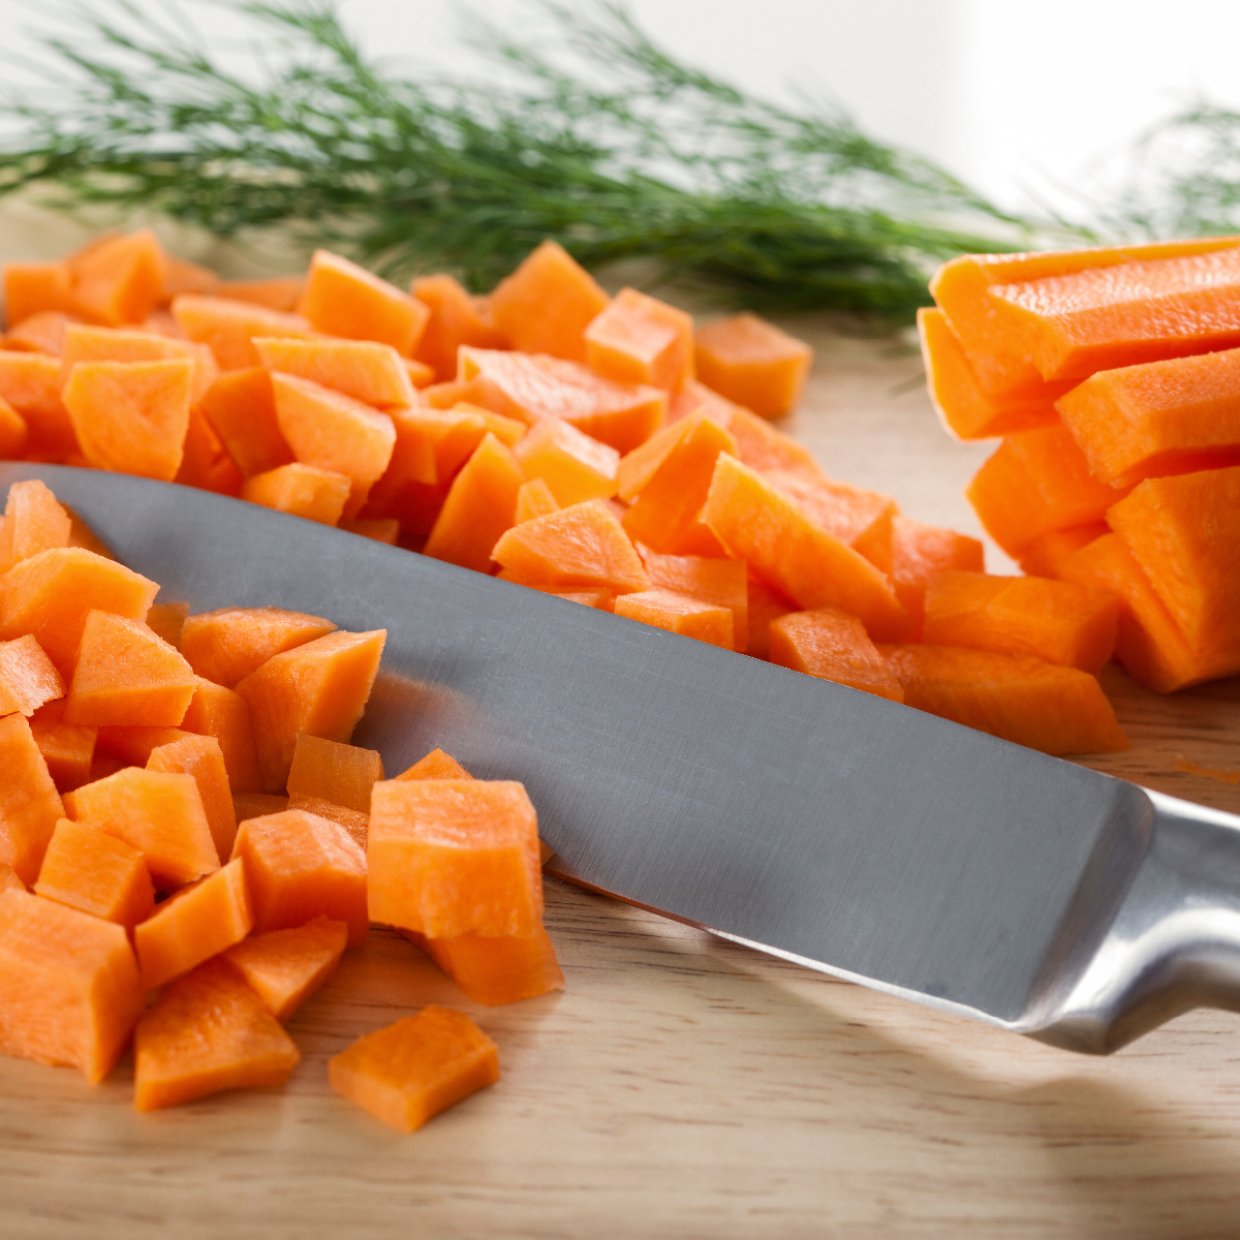  時間を貯める「プチ調理」。 野菜を切るときの一工夫で明日の自分が楽になる！ 